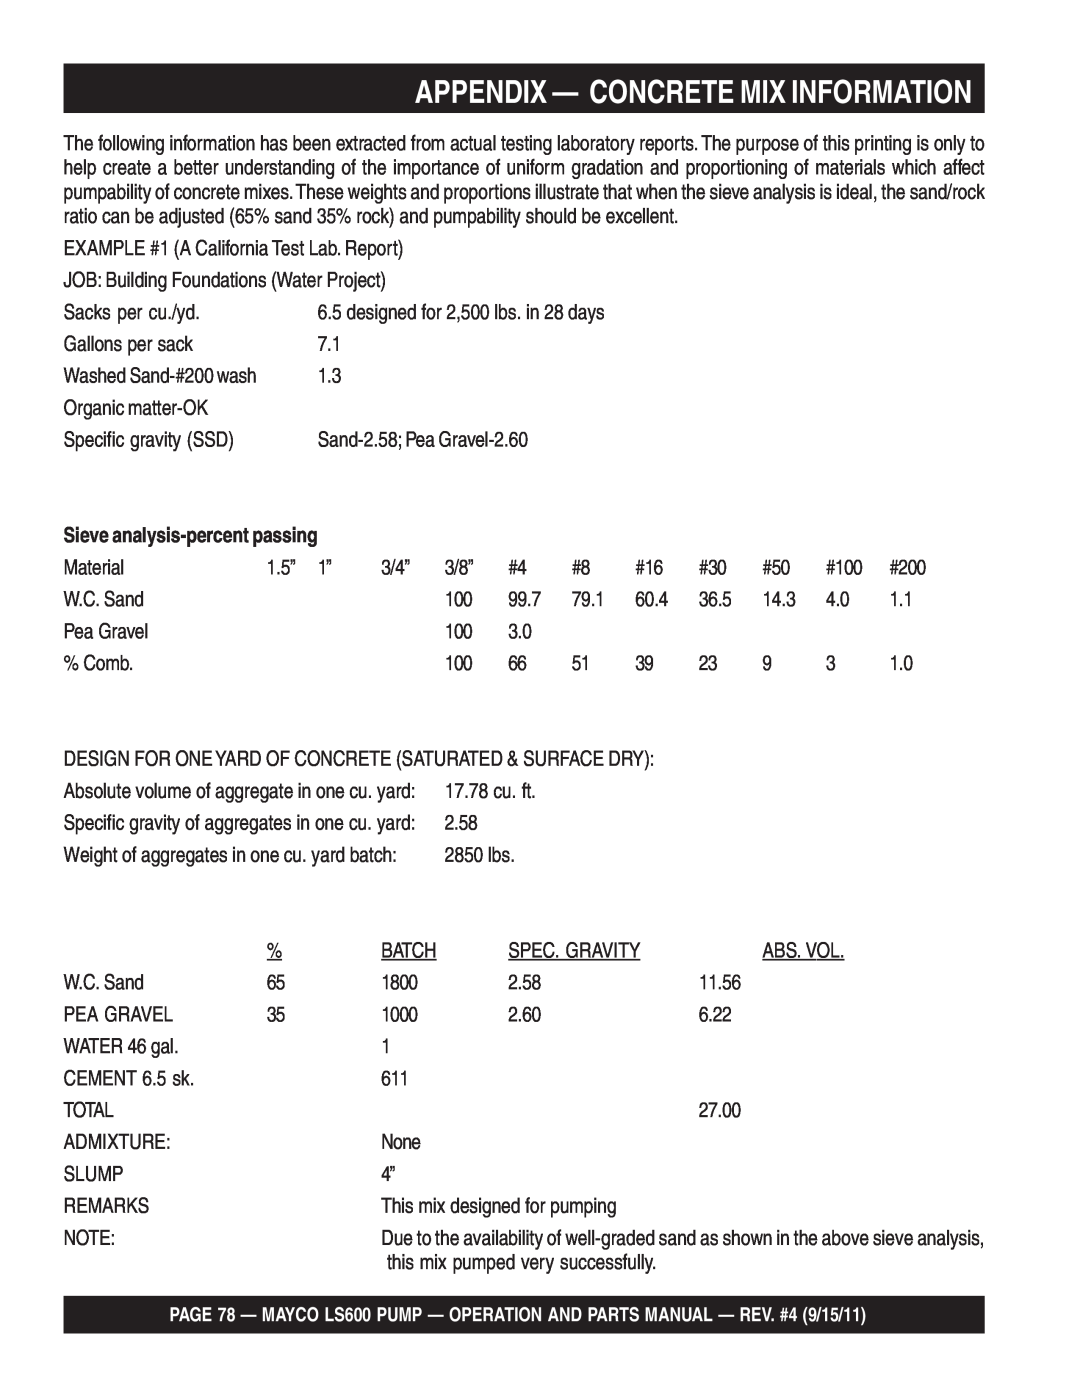 Multiquip LS600 manual Appendix — Concrete Mix Information 